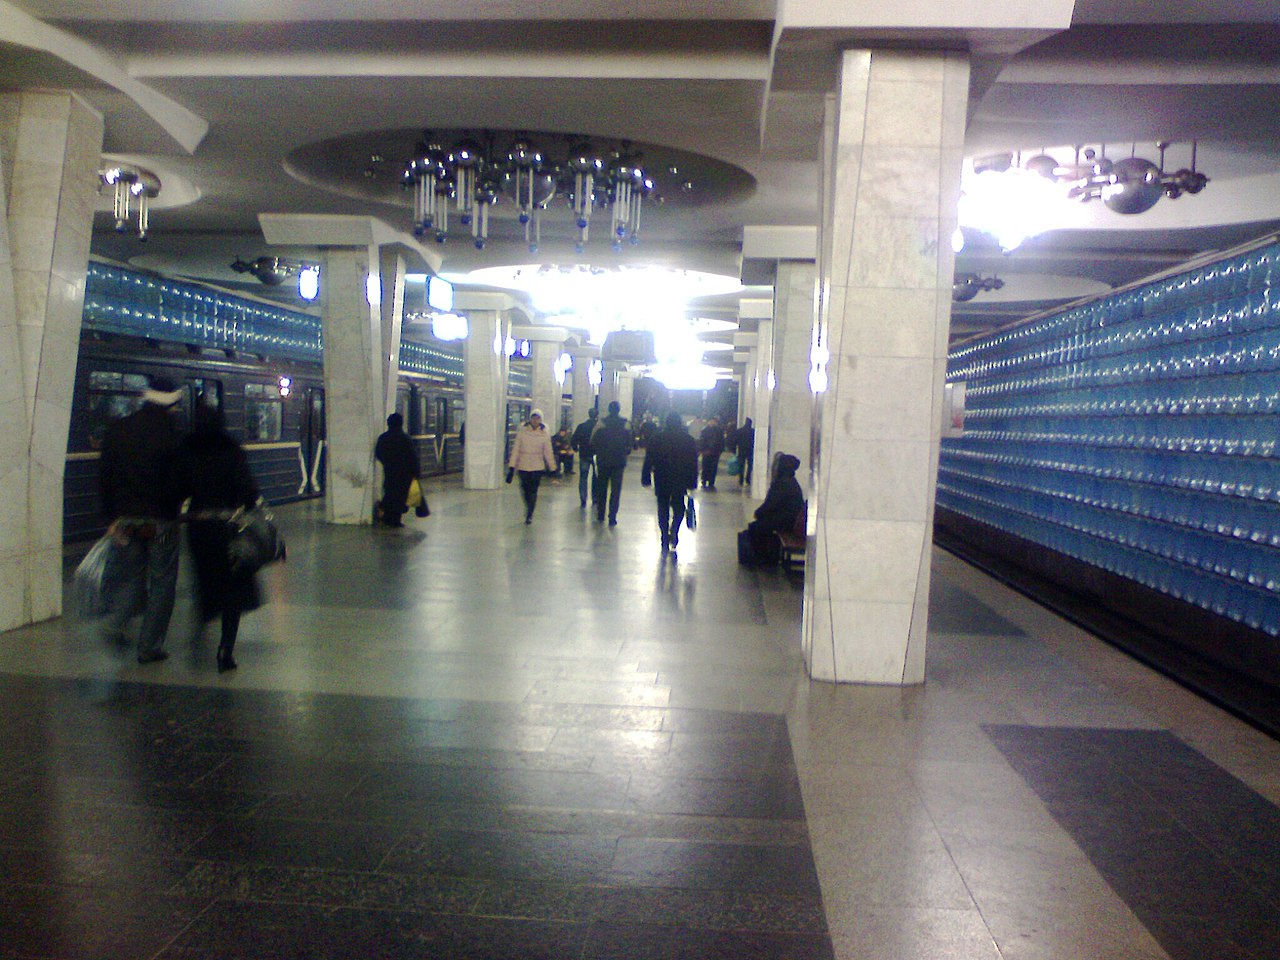 В Харькове на станции метро скончался мужчина